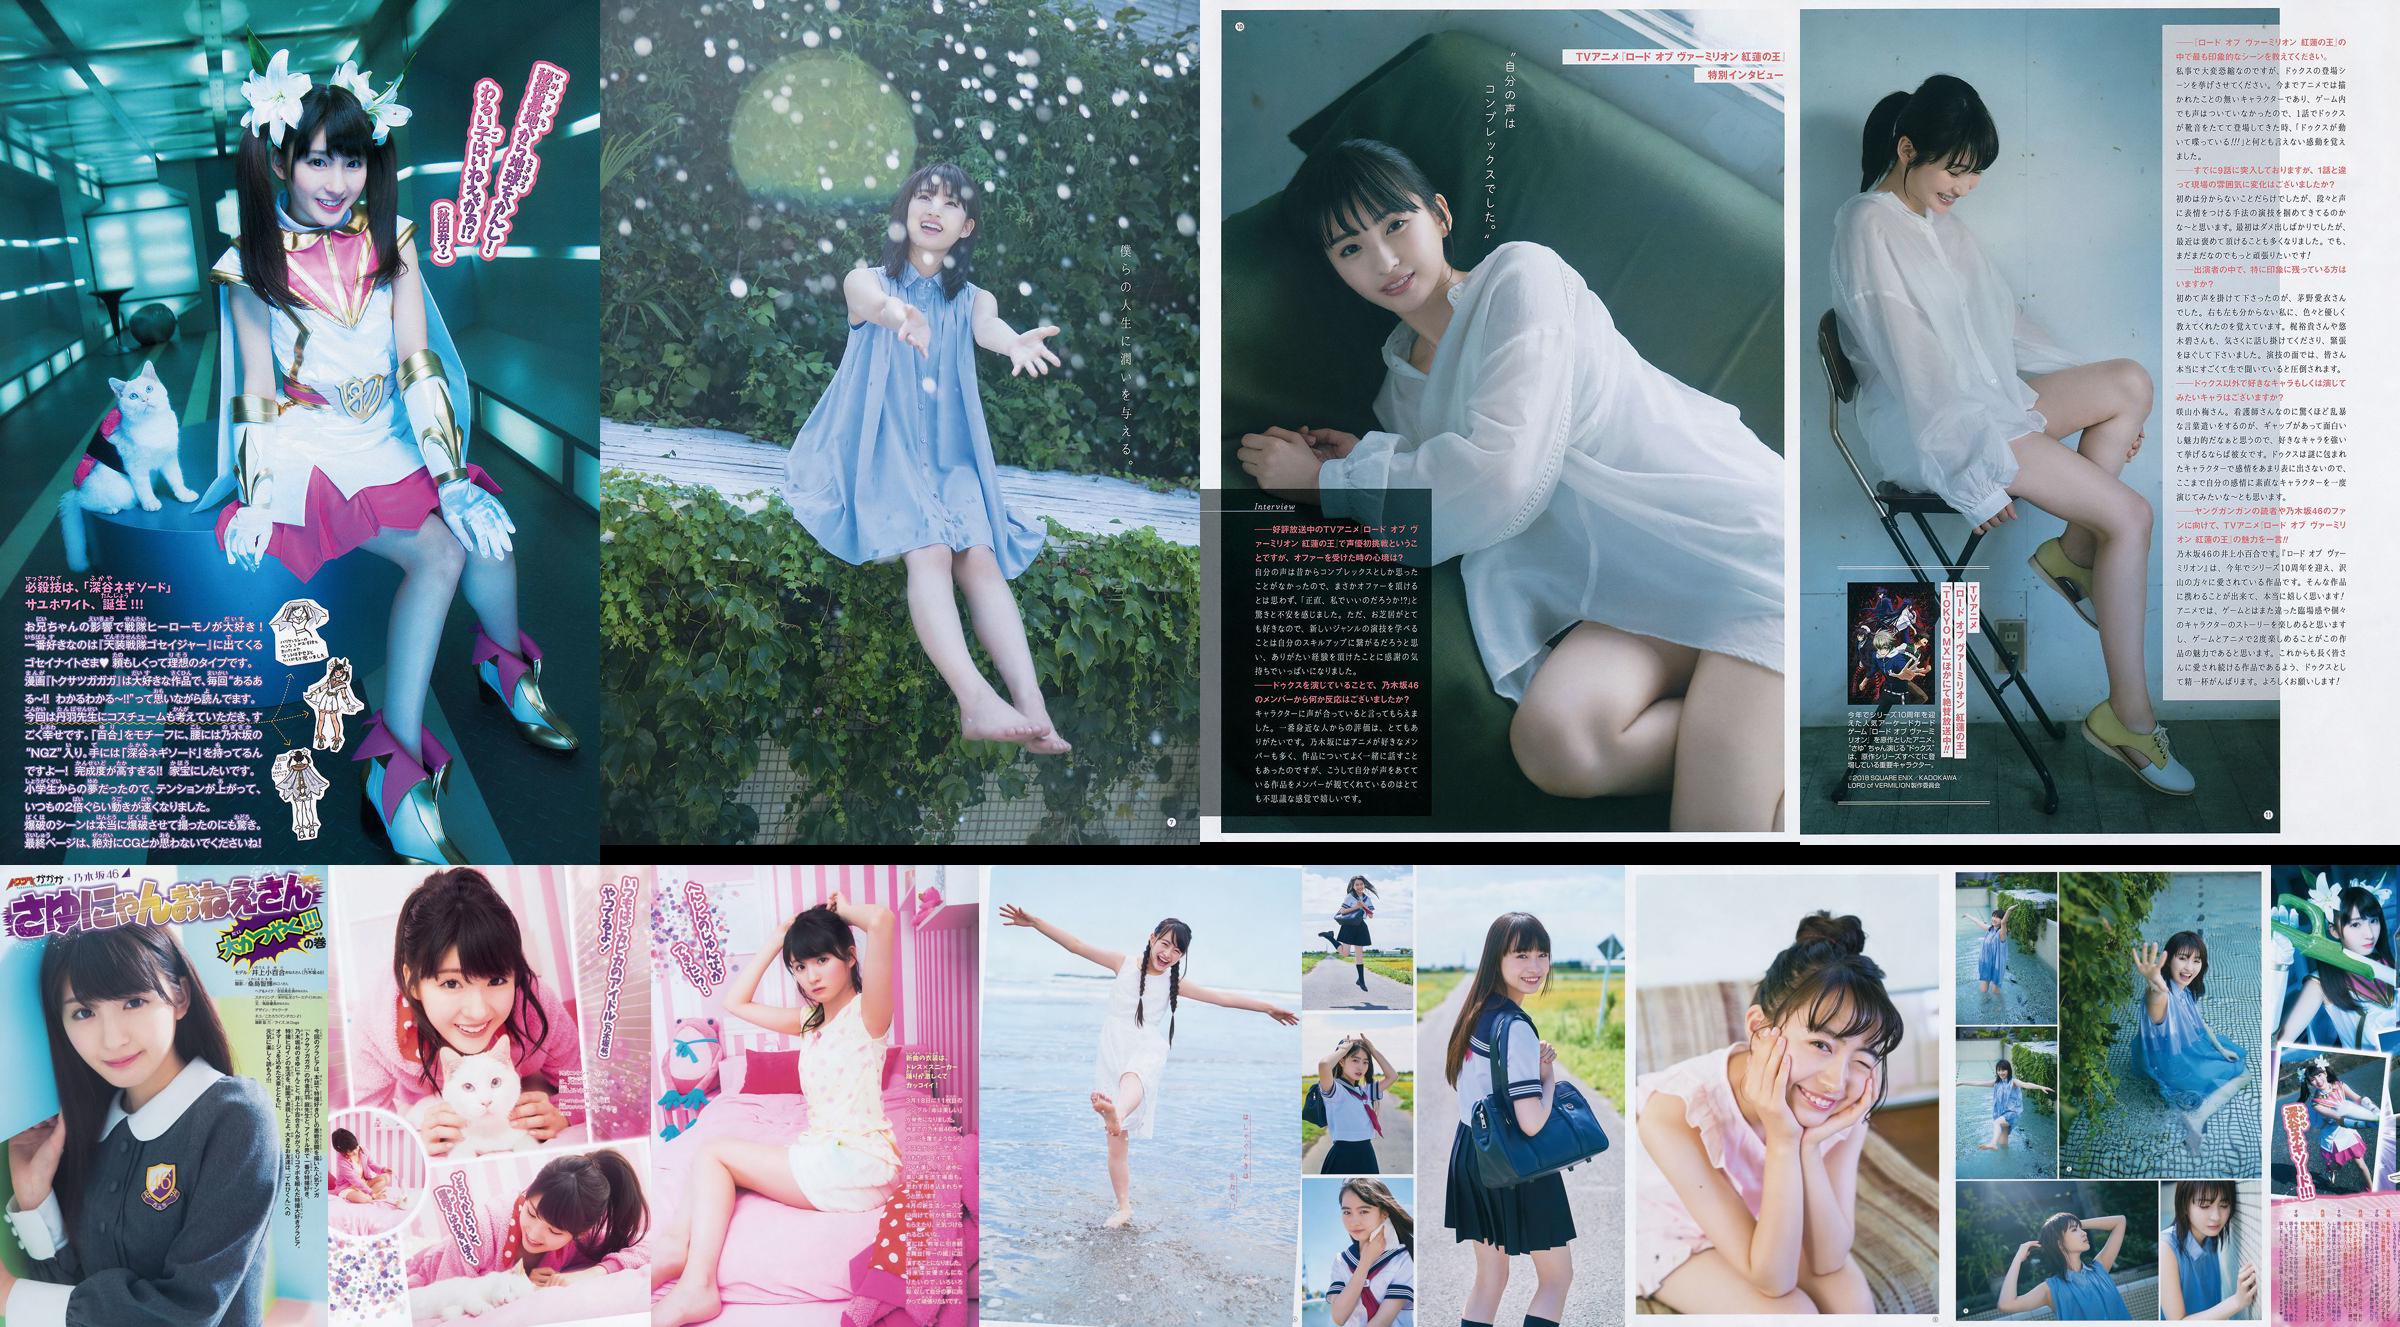 [Young Gangan] Sayuri Inoue Su arena original 2018 No.18 Photo Magazine No.bba147 Página 1